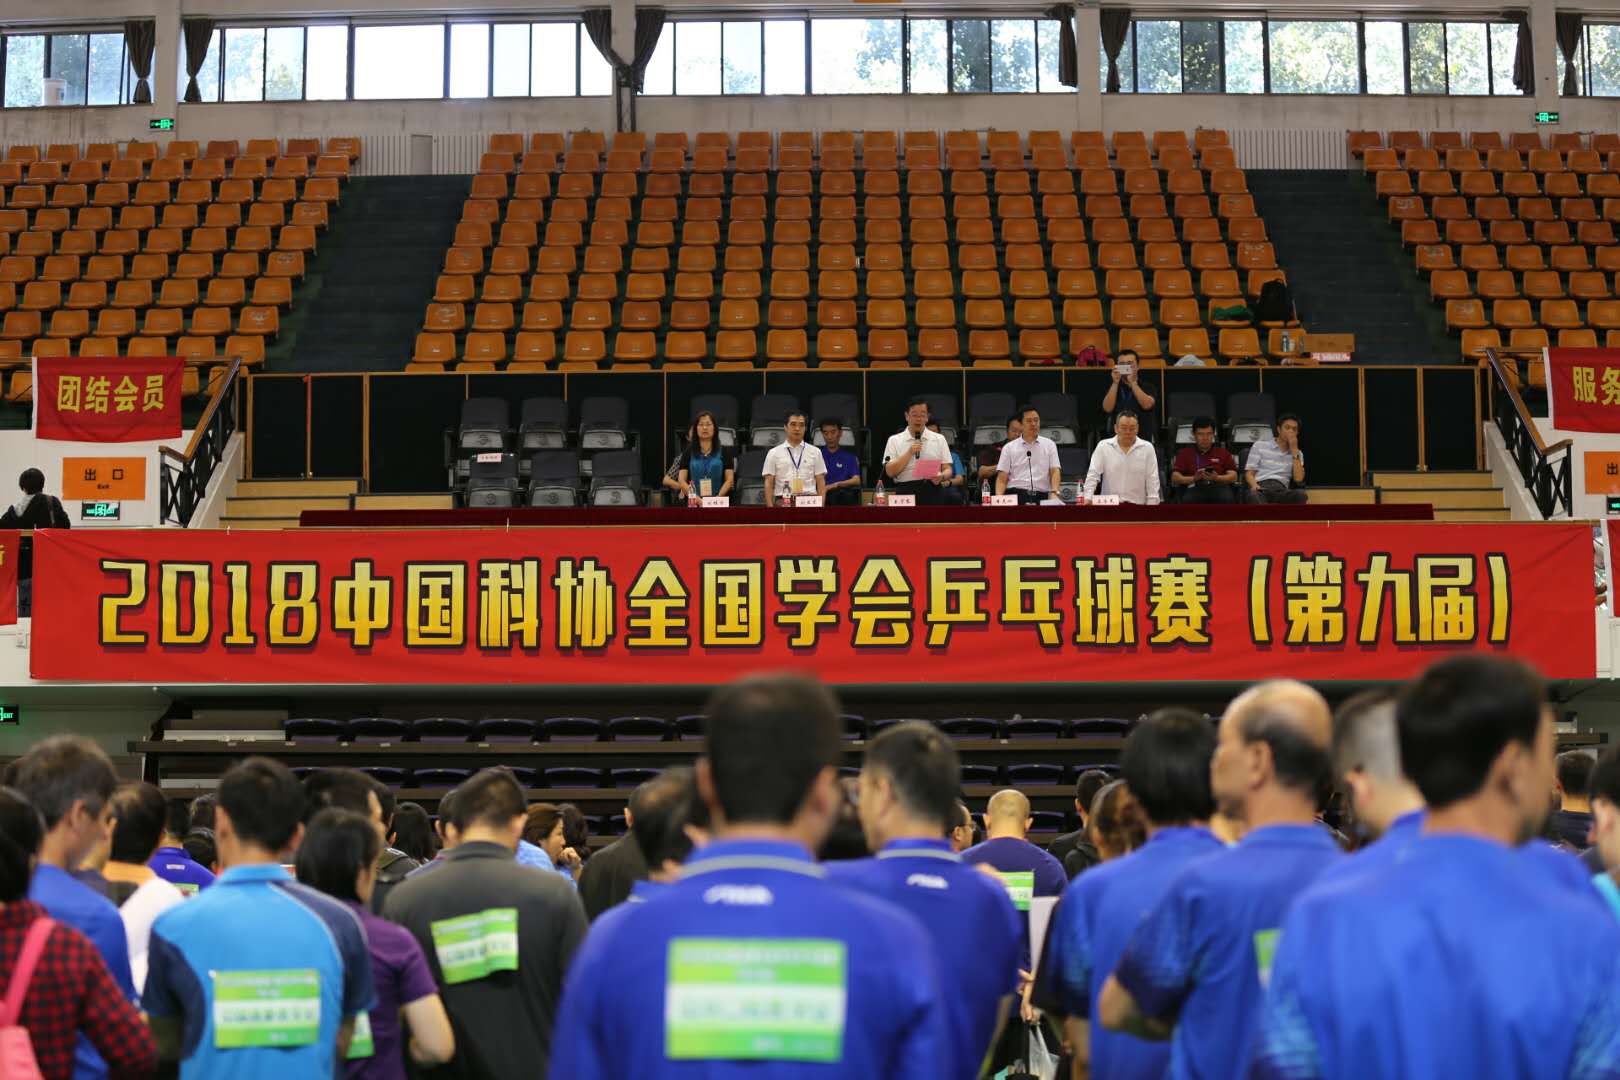 中国土地学会乒乓球队在中国科协全国学会乒乓球比赛中摘金夺银取得历史突破